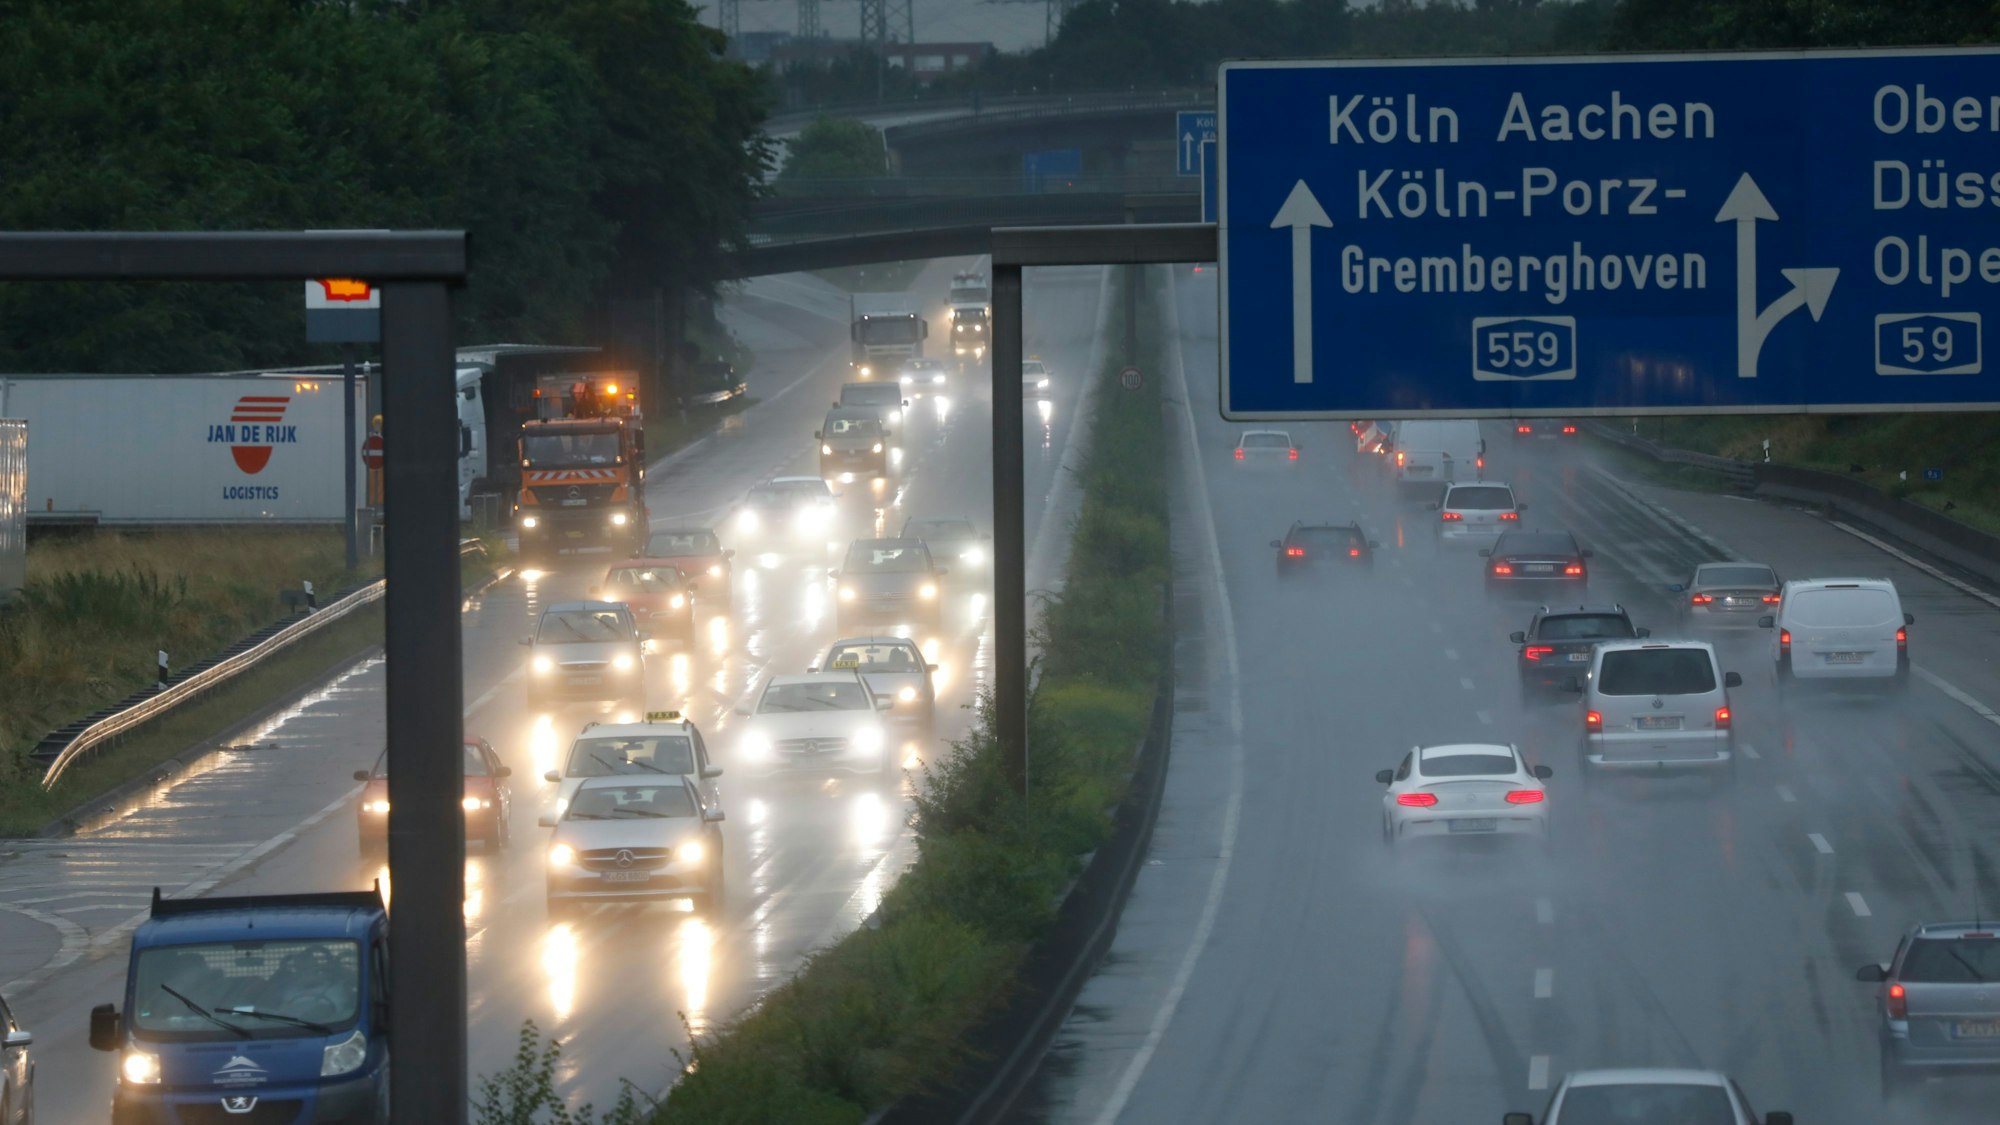 Symbolbild von der Autobahn A559 in Köln.